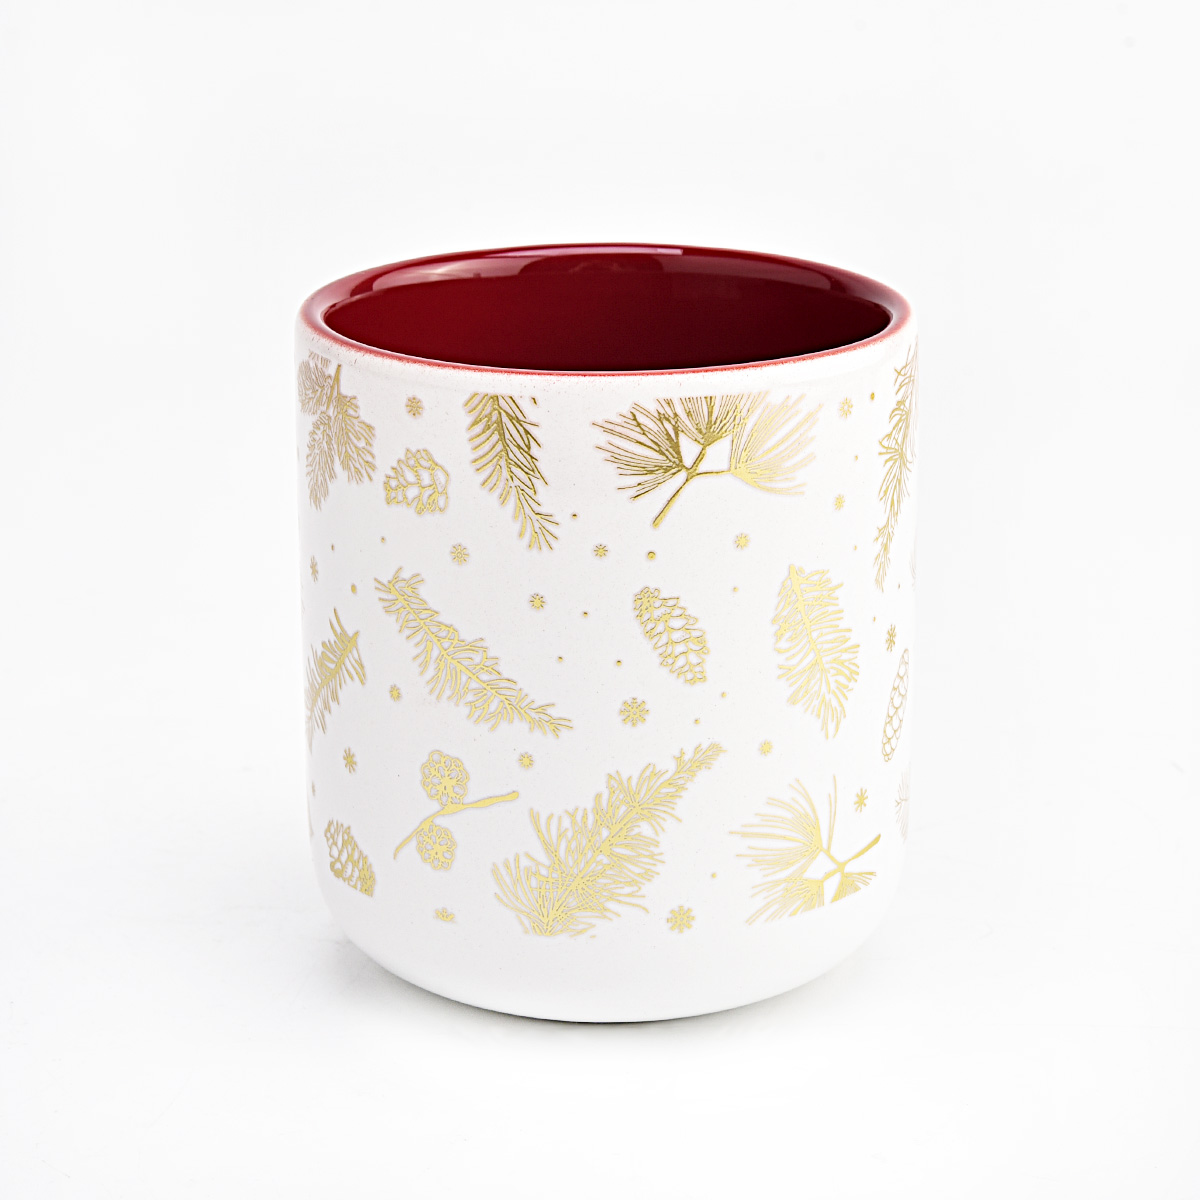 Kerzengefäß aus Keramik mit goldenem Muster für Weihnachten